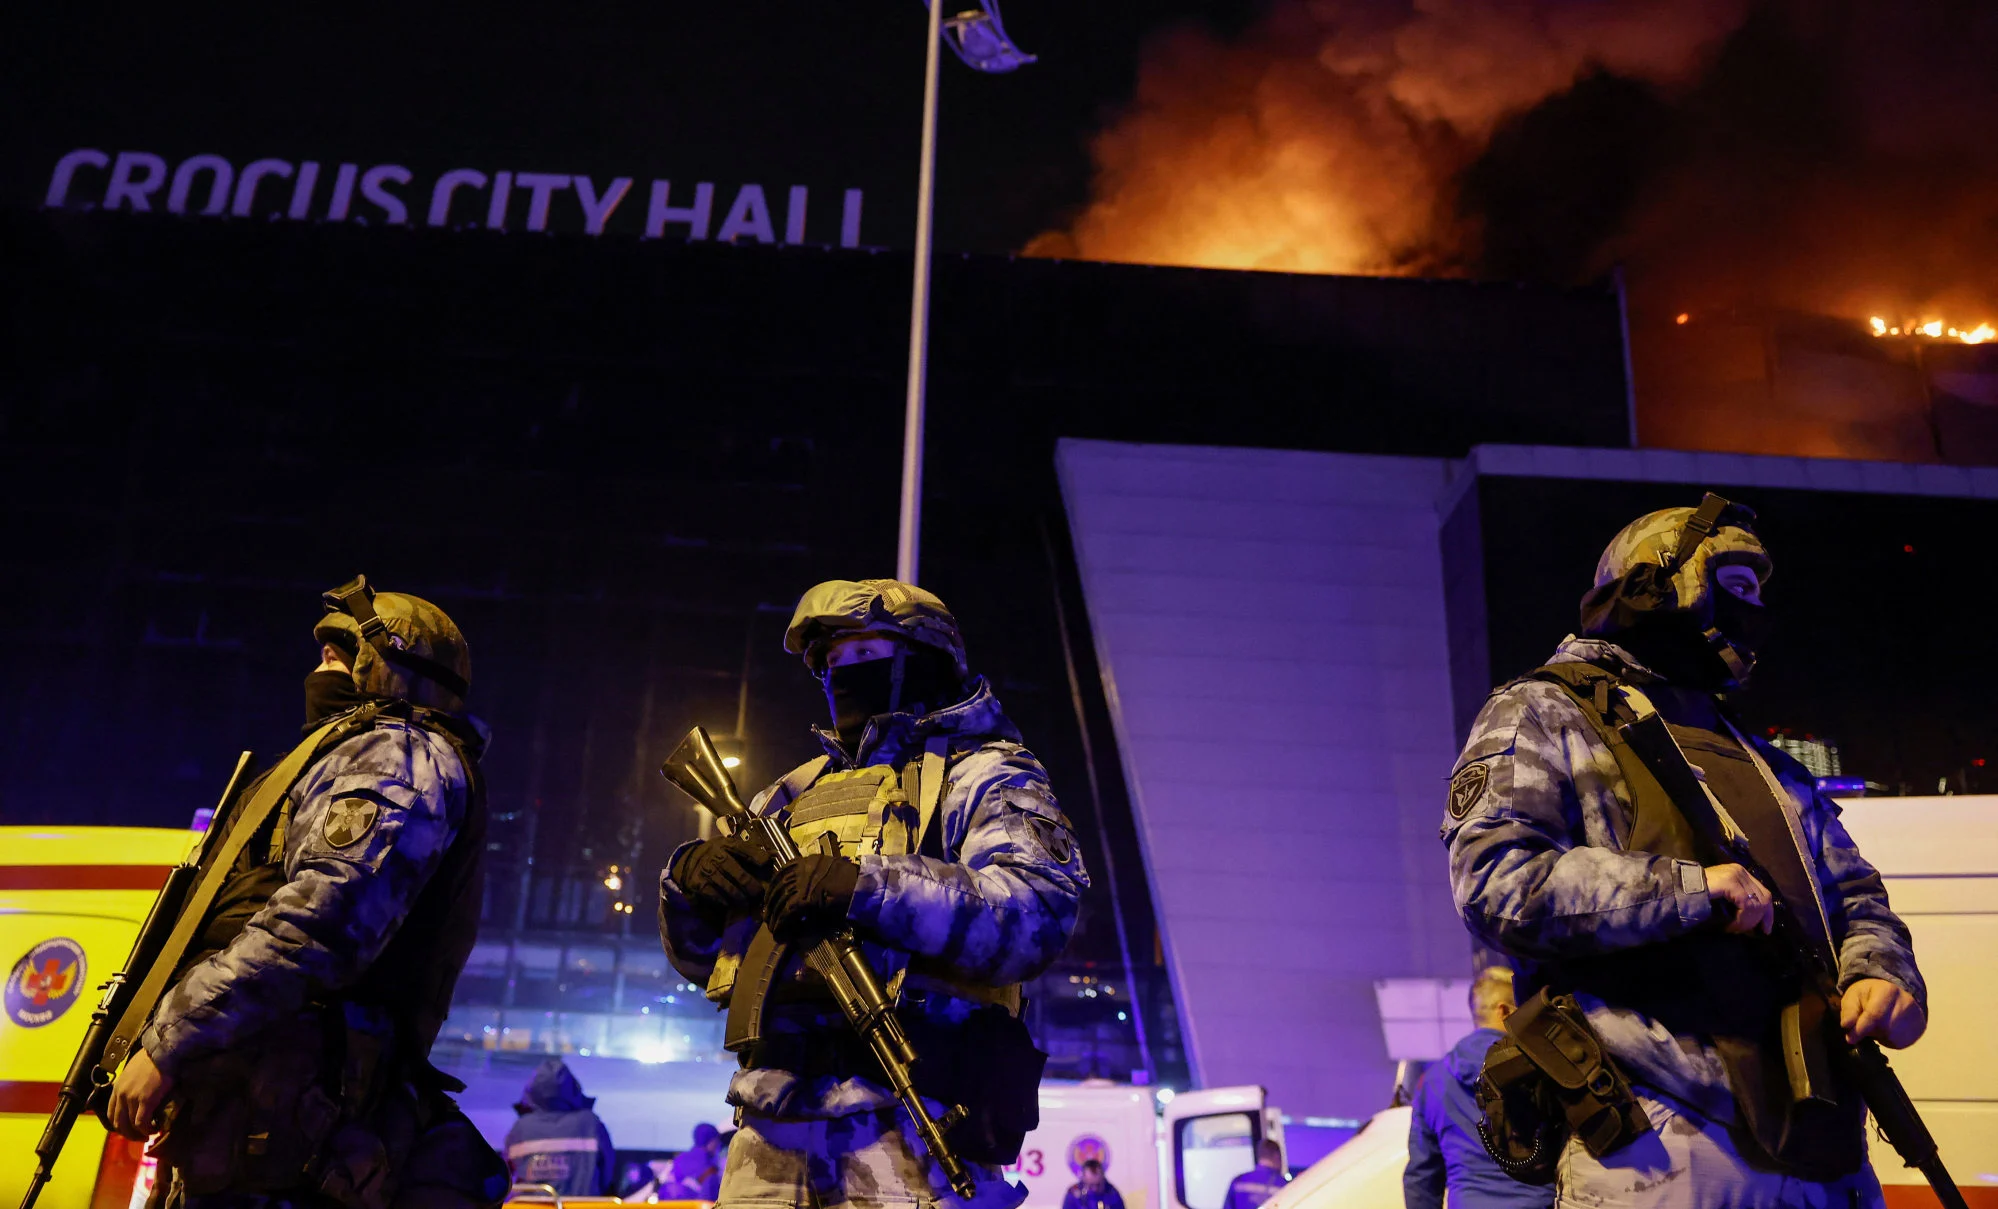 Zamach terrorystyczny w Moskwie –Rosgwardia (?)